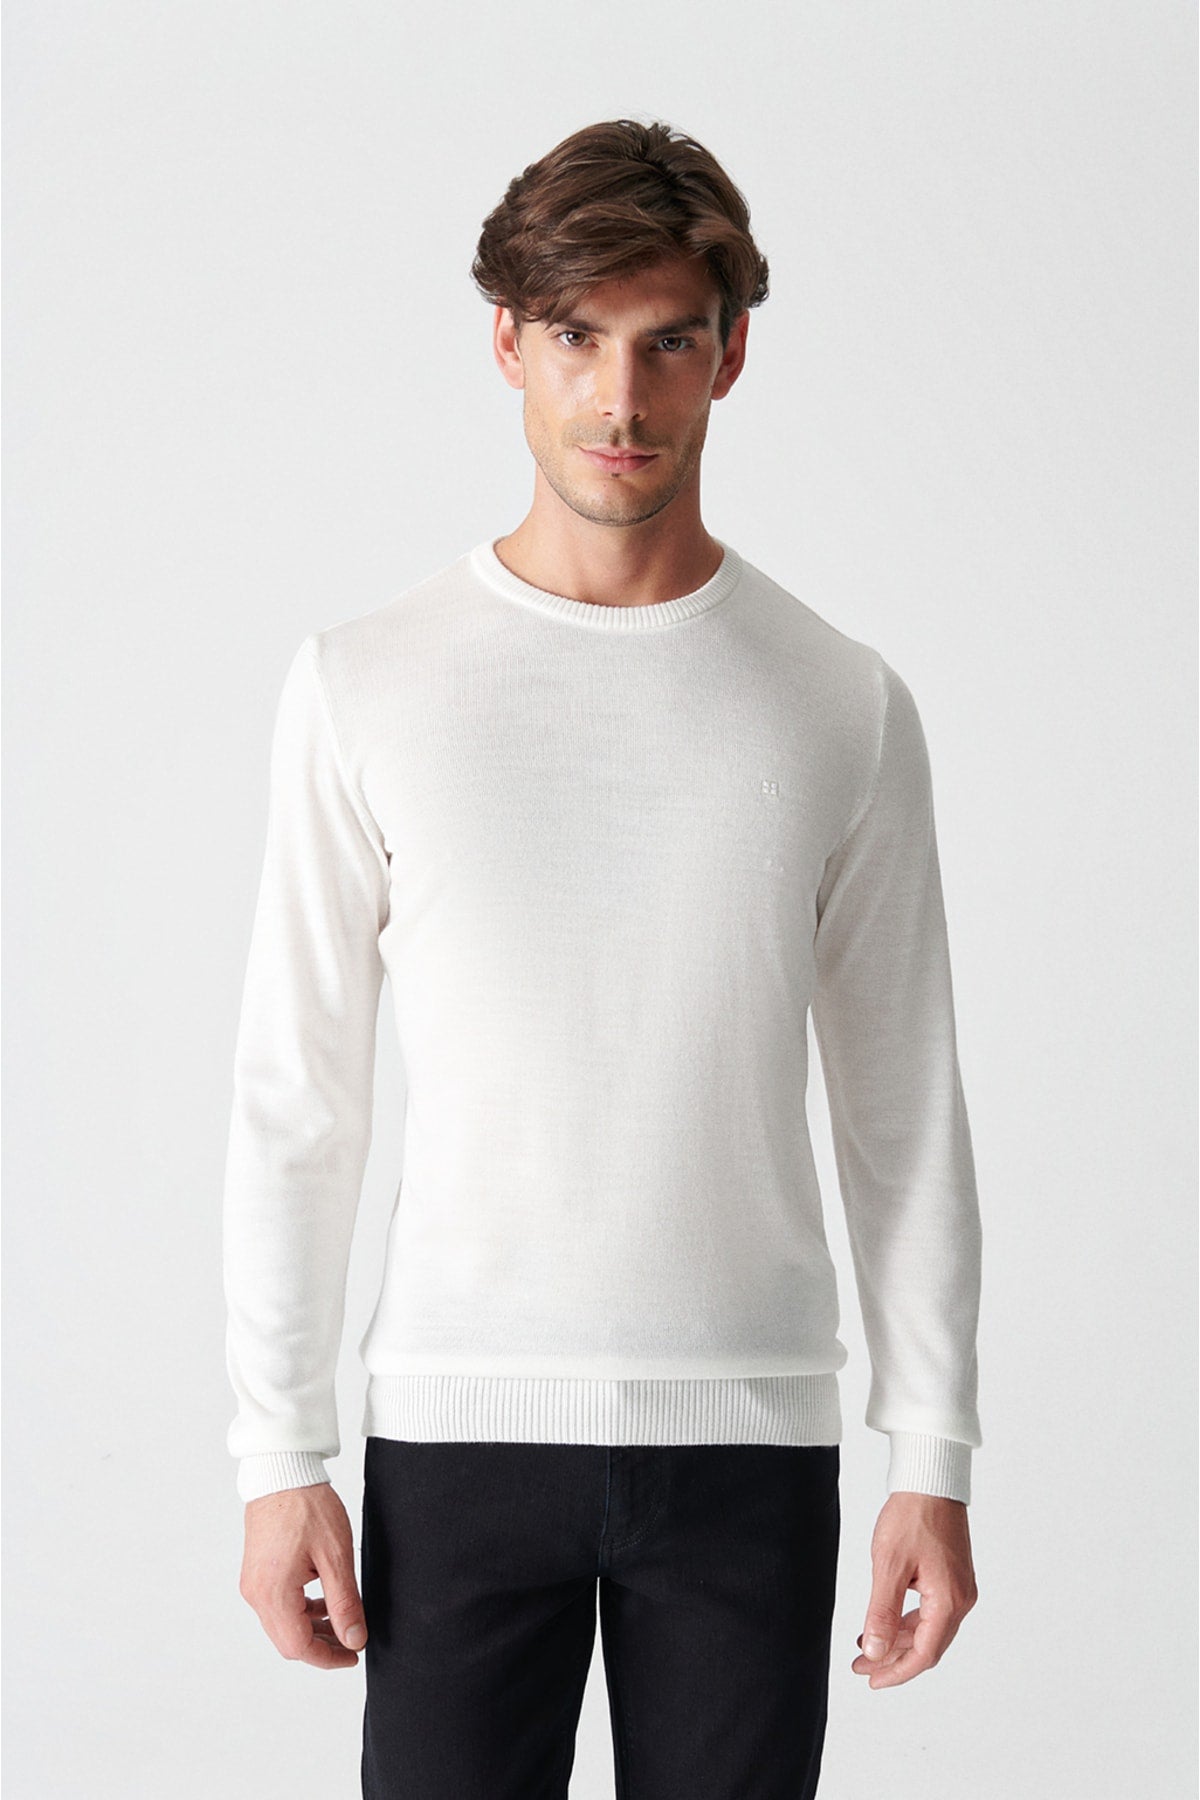 Men's white bike collar regular non -hairy fit sweater E005000